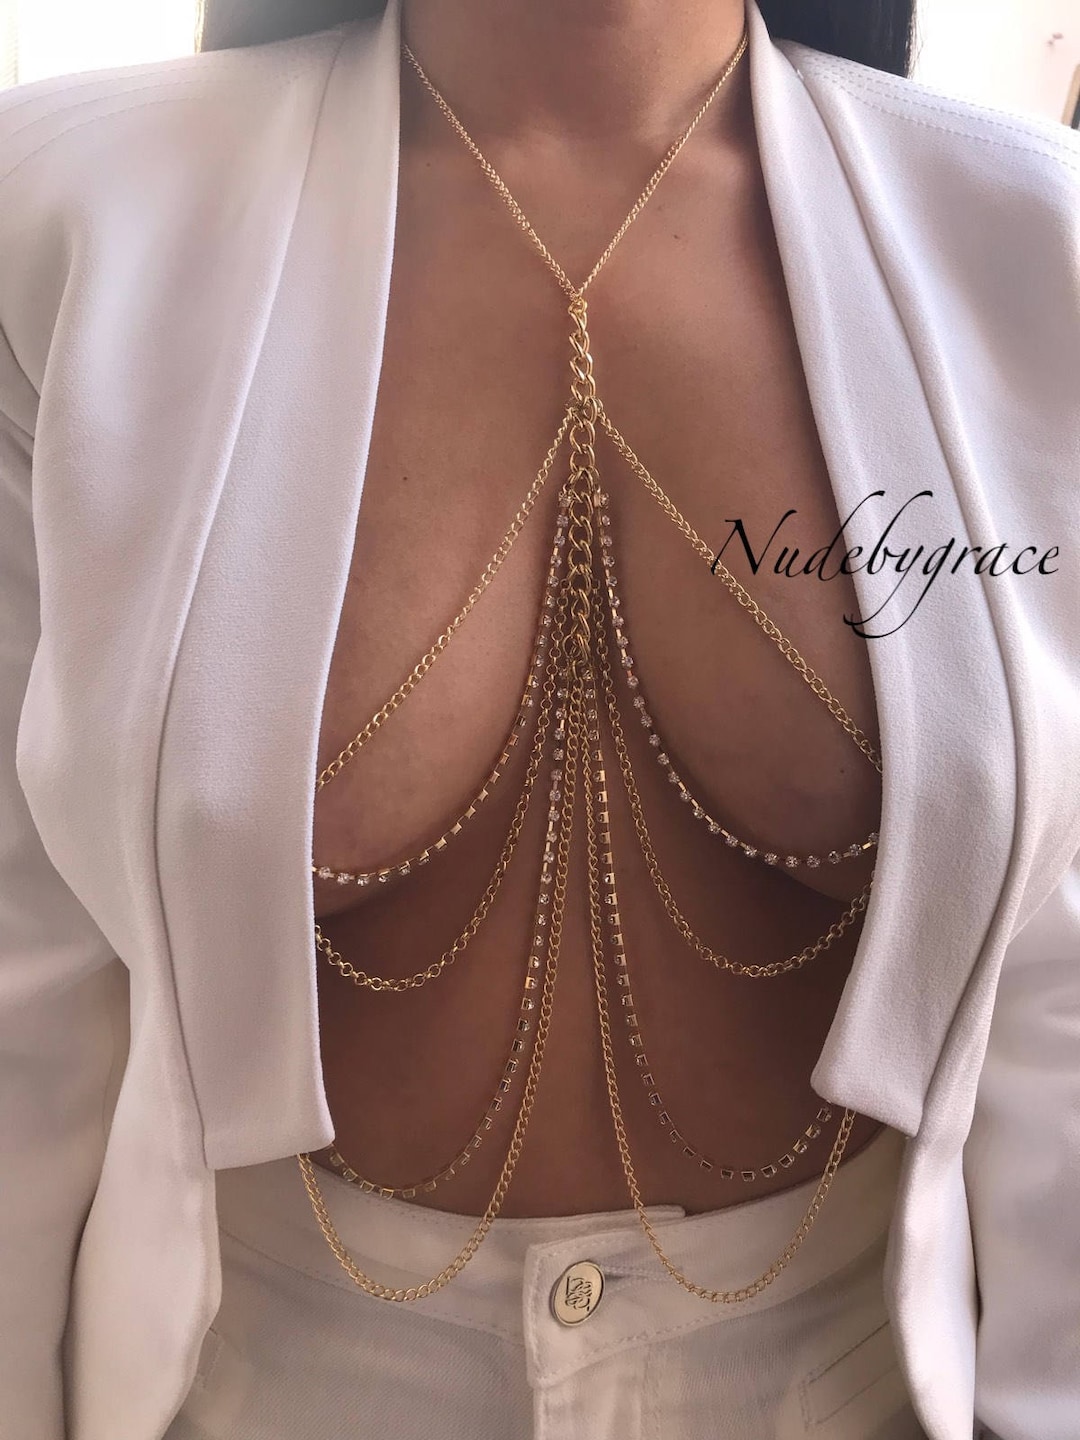 La Moda Body Jewelry - Some cute nipple piercings